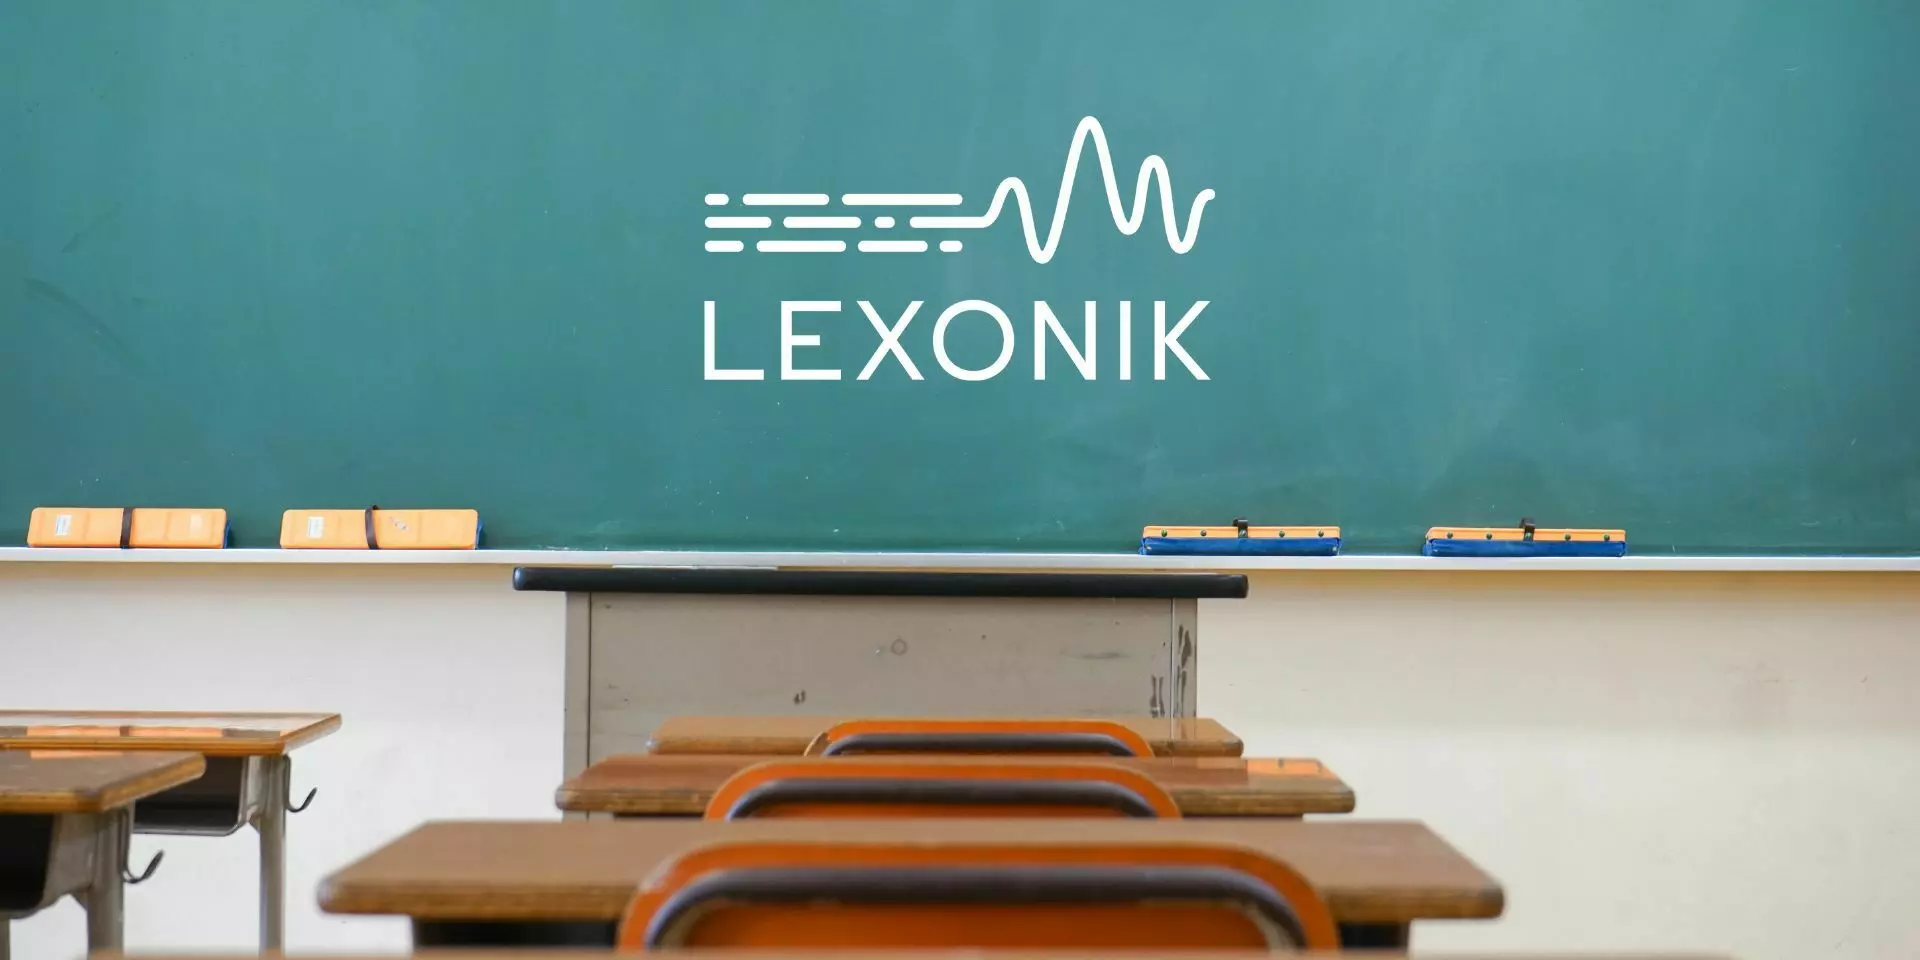 a blackboard in a classroom with the lexonik logo written on it